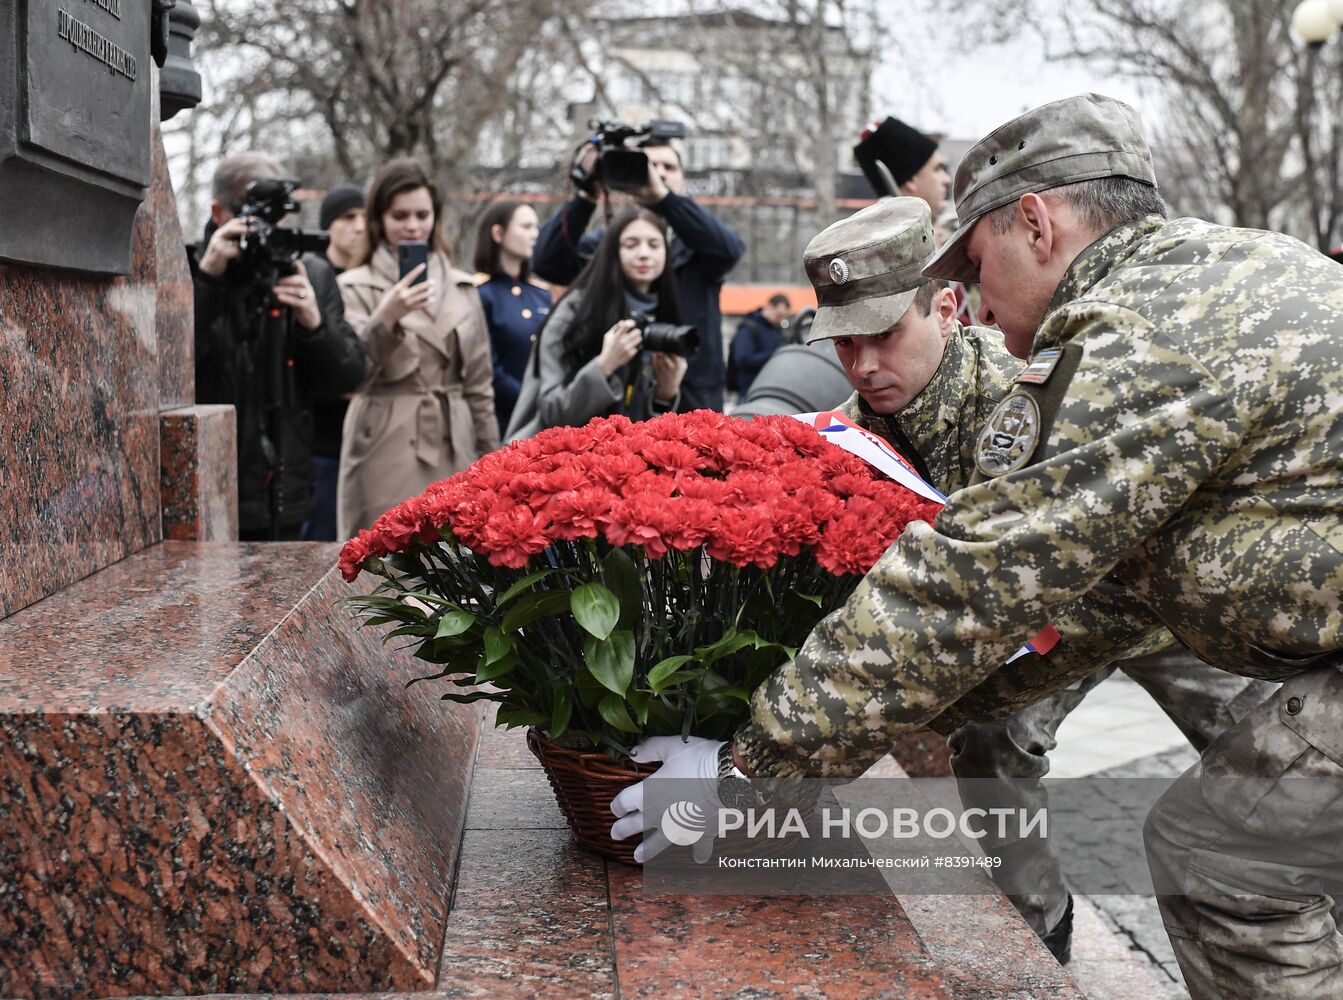 Церемония возложения цветов к памятнику  "Народному ополчению всех времён" в Симферополе